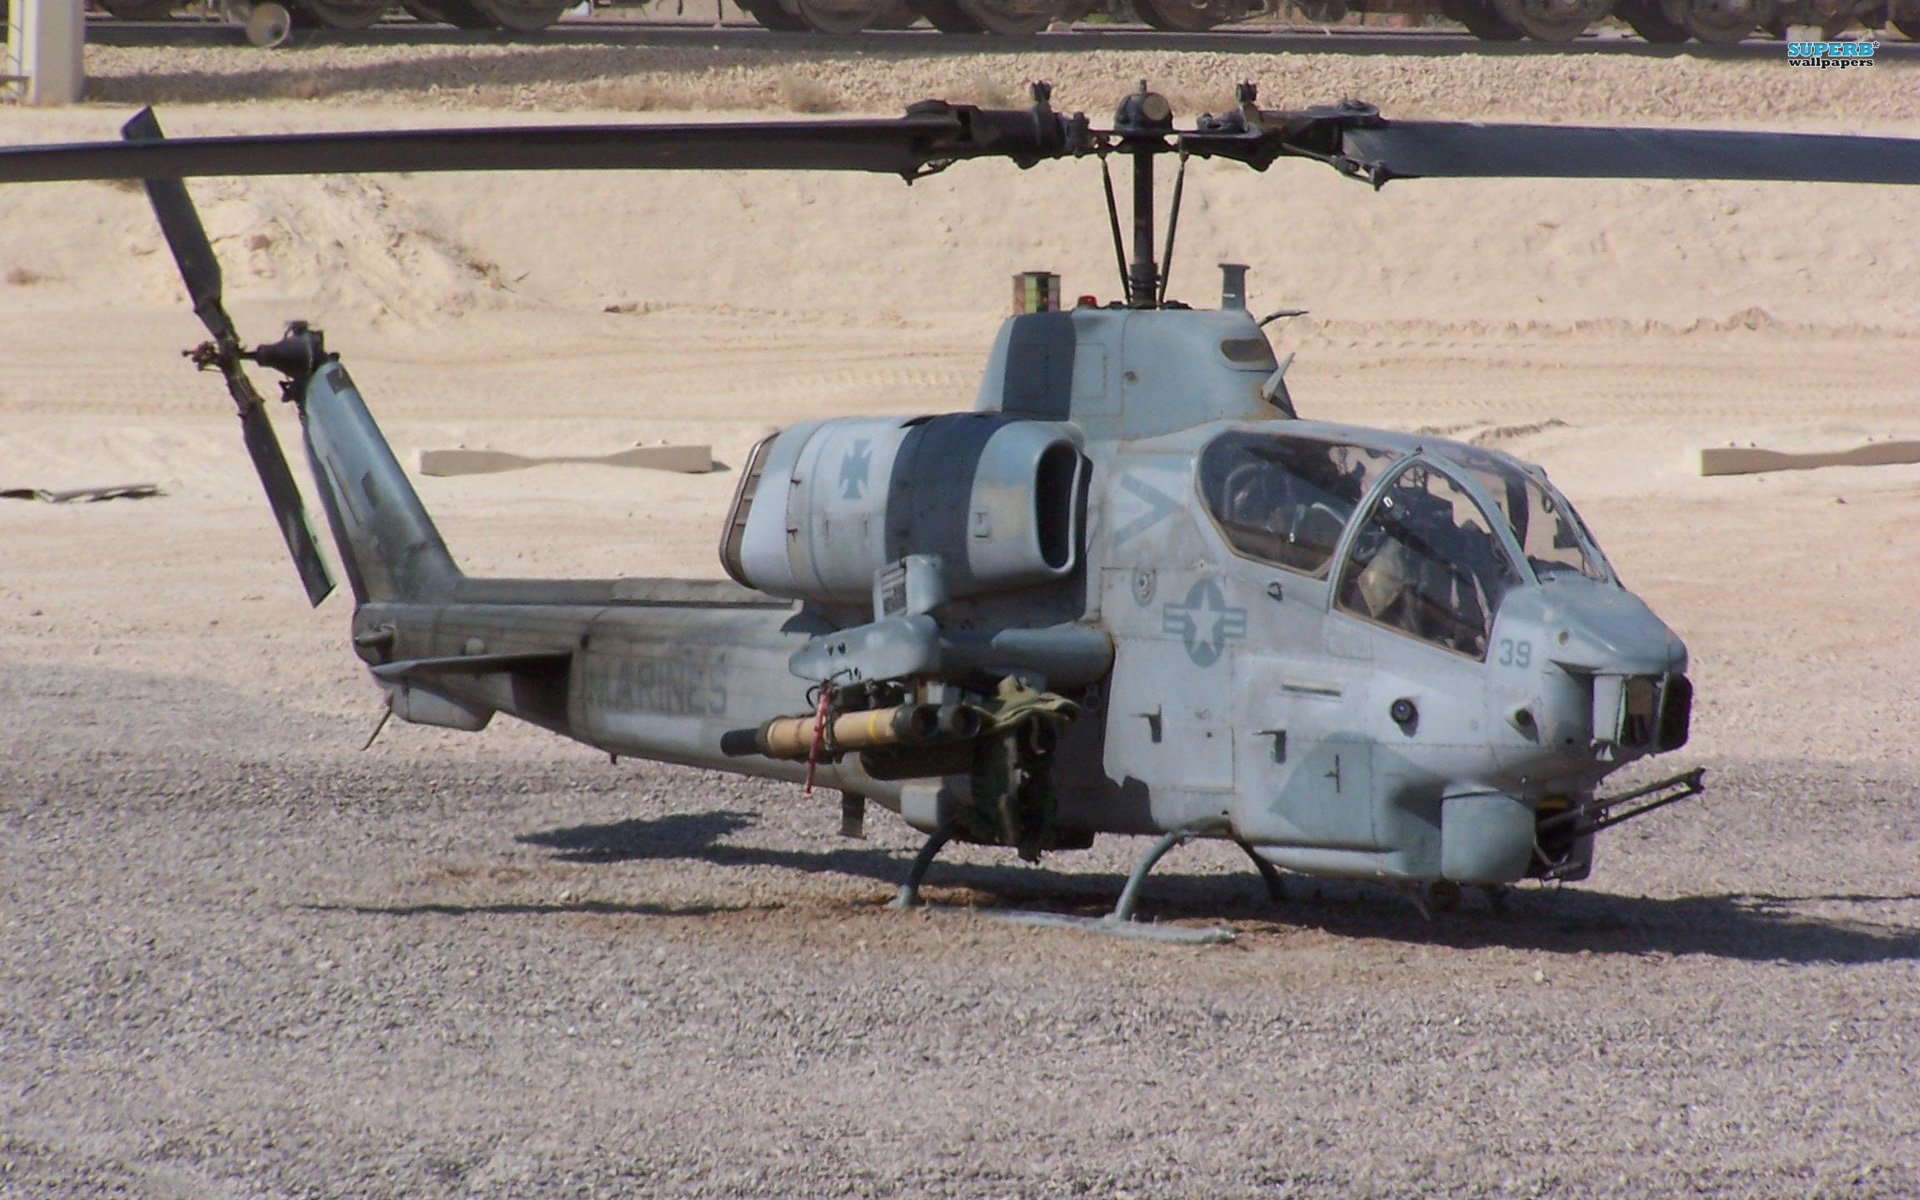 AH-1 Cobra Gunship flying over a military landscape